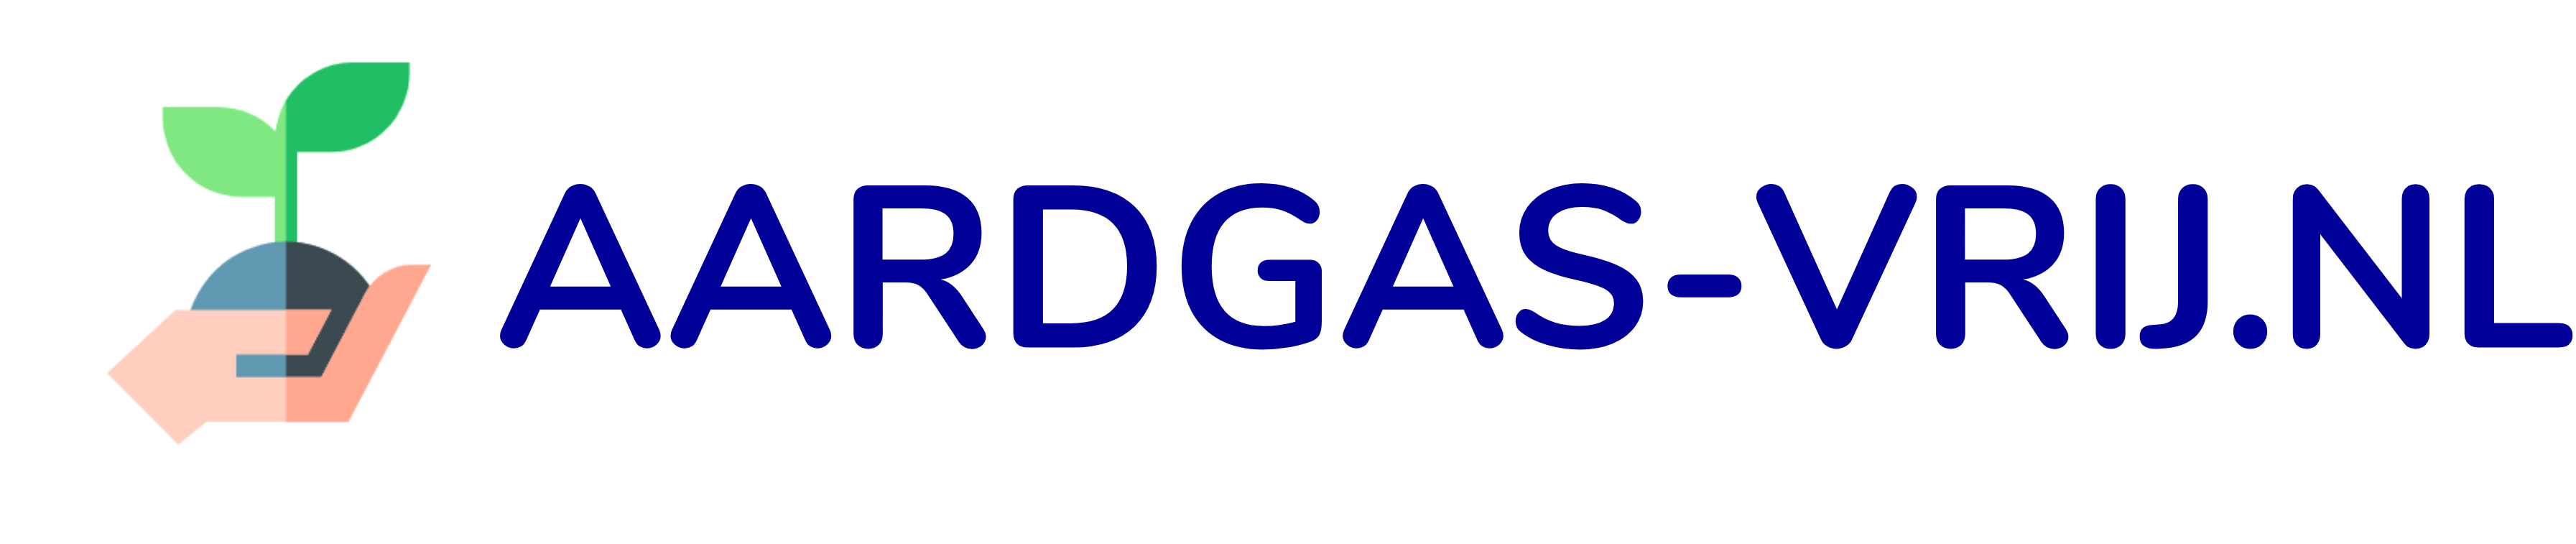 Aardgas-vrij.nl